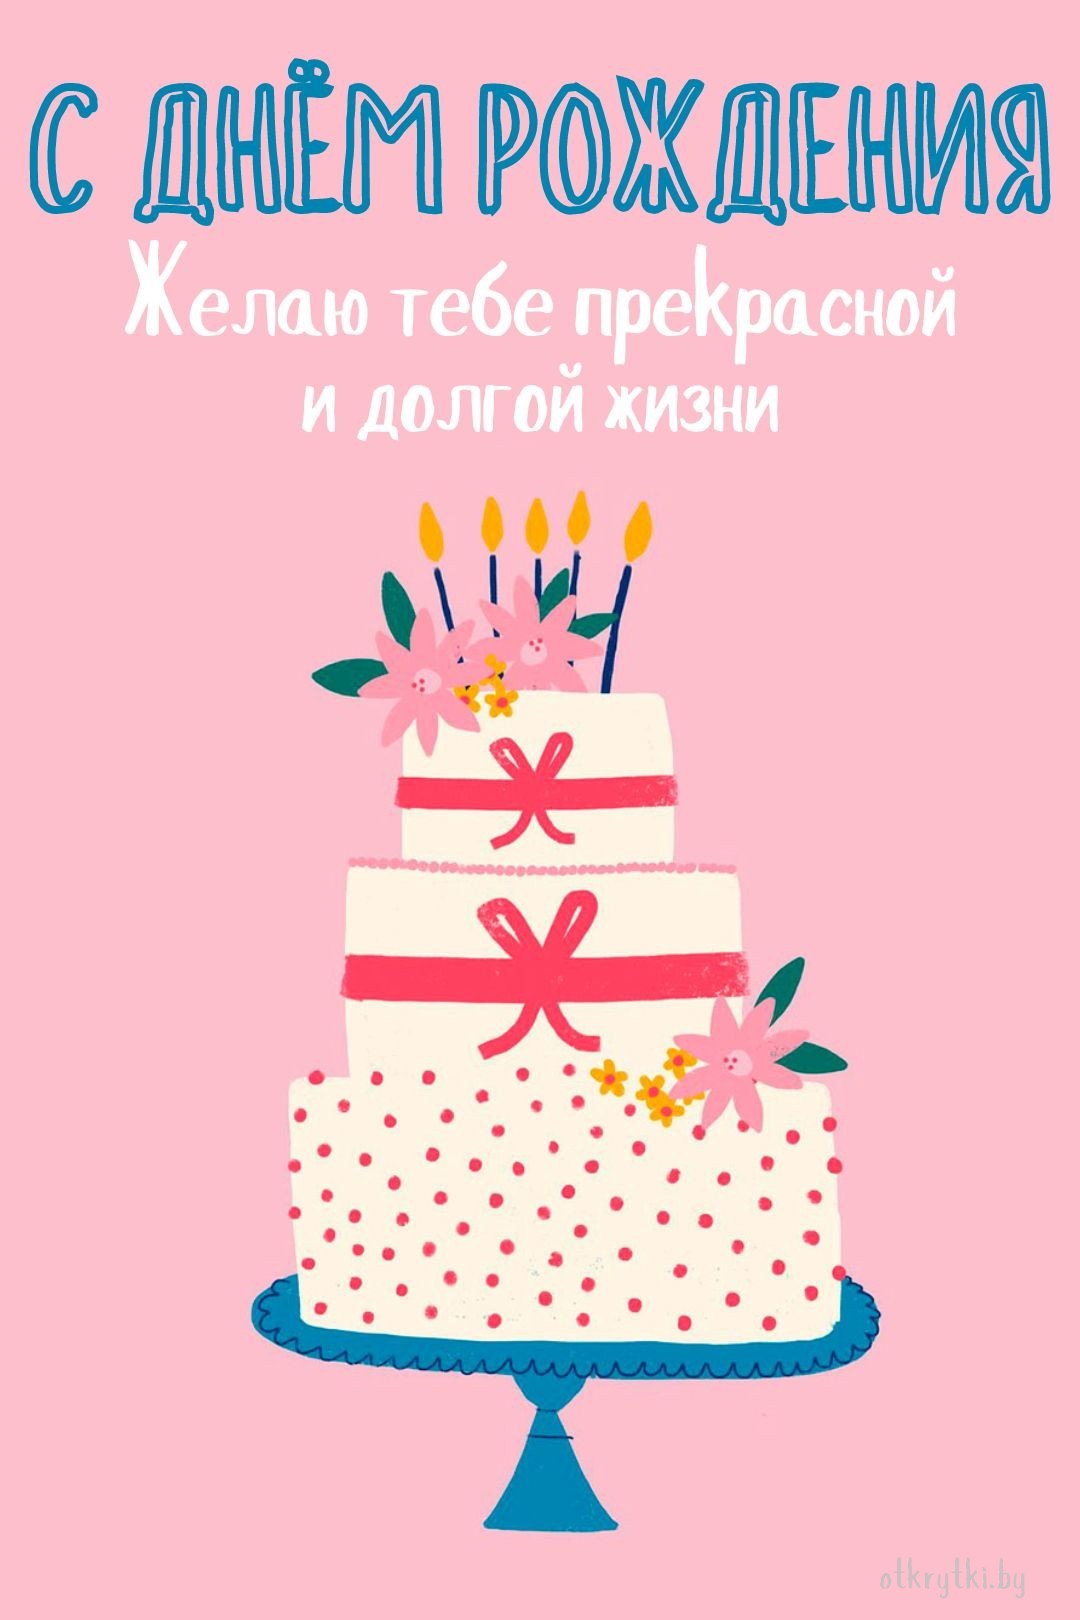 Картинка на день рождения с тортиком